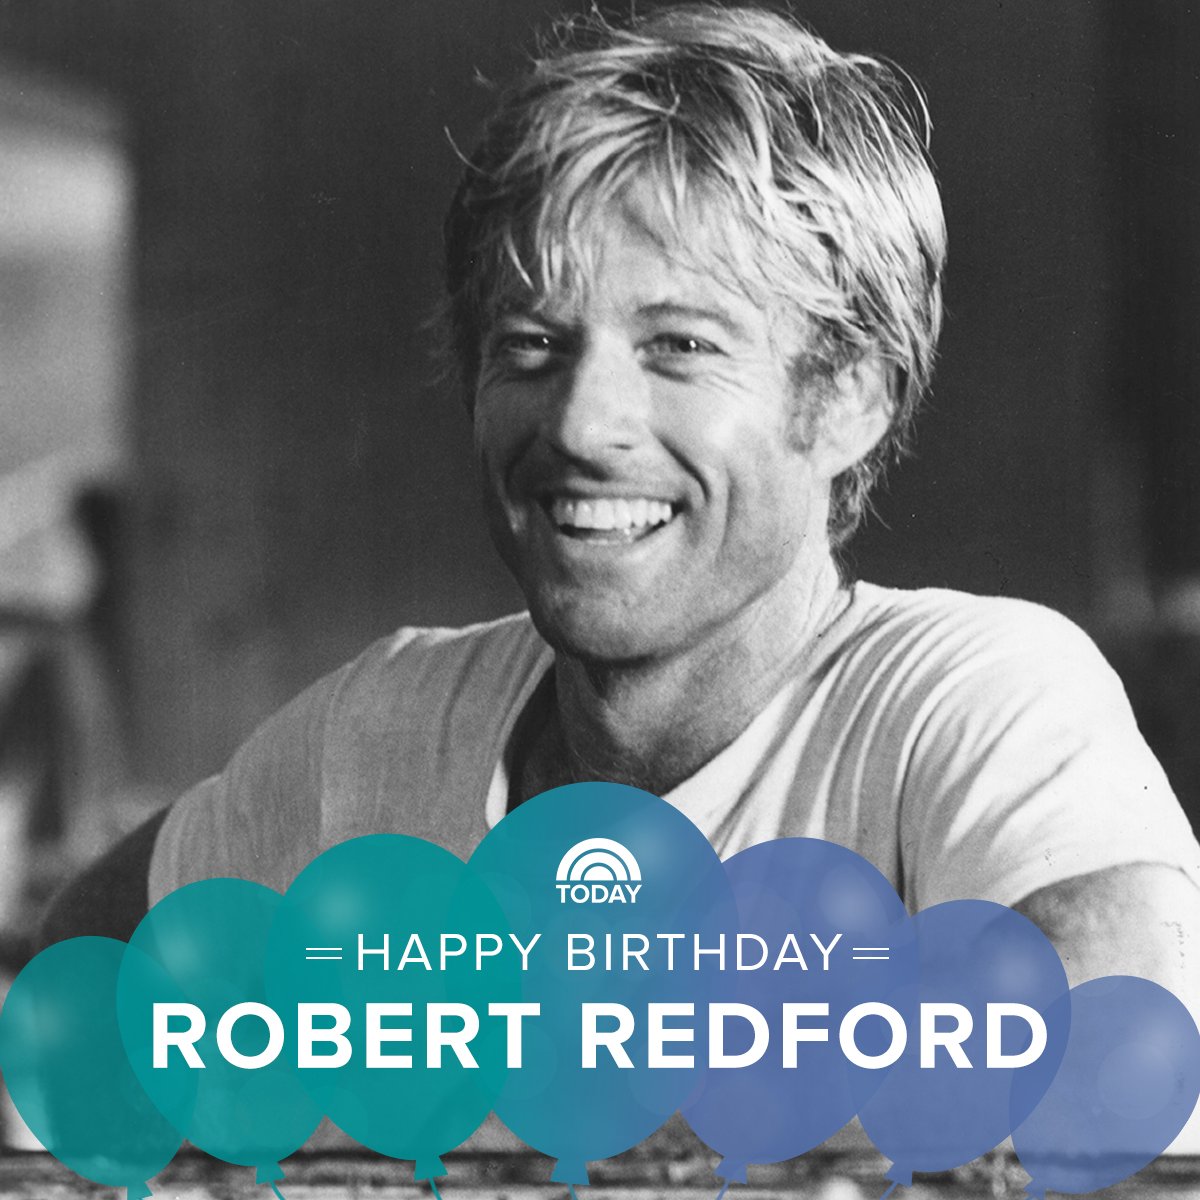 Happy birthday, Robert Redford!  